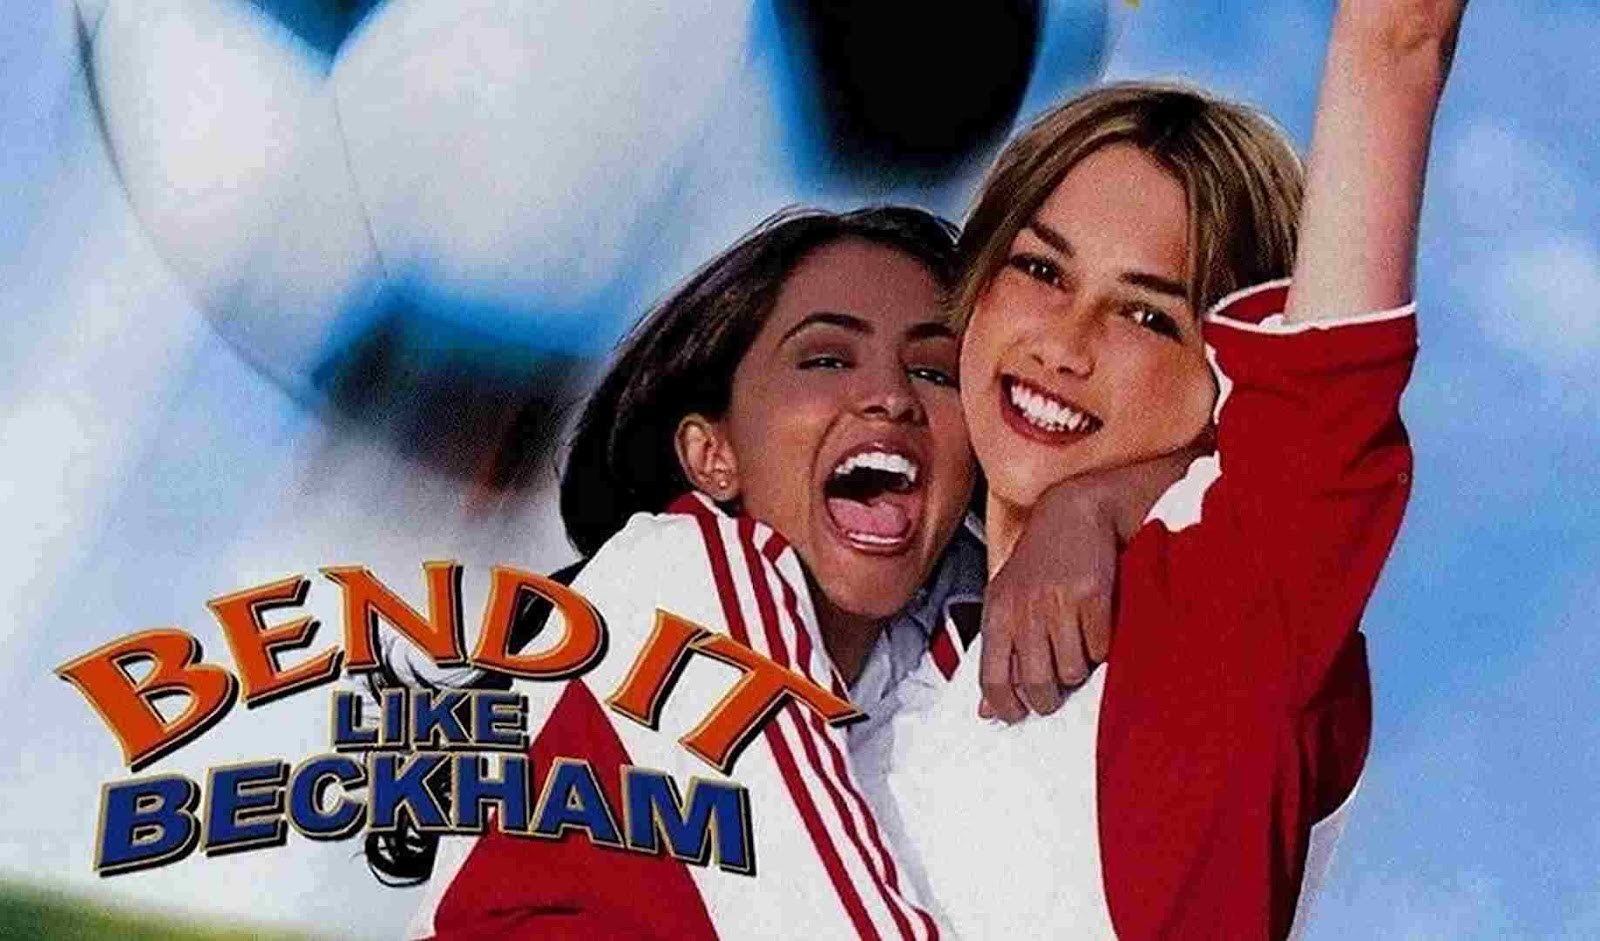 مثل بکام کات‌دار بزن (Bend It Like Beckham) از بهترین فیلم های فوتبالی که باید ببینید.